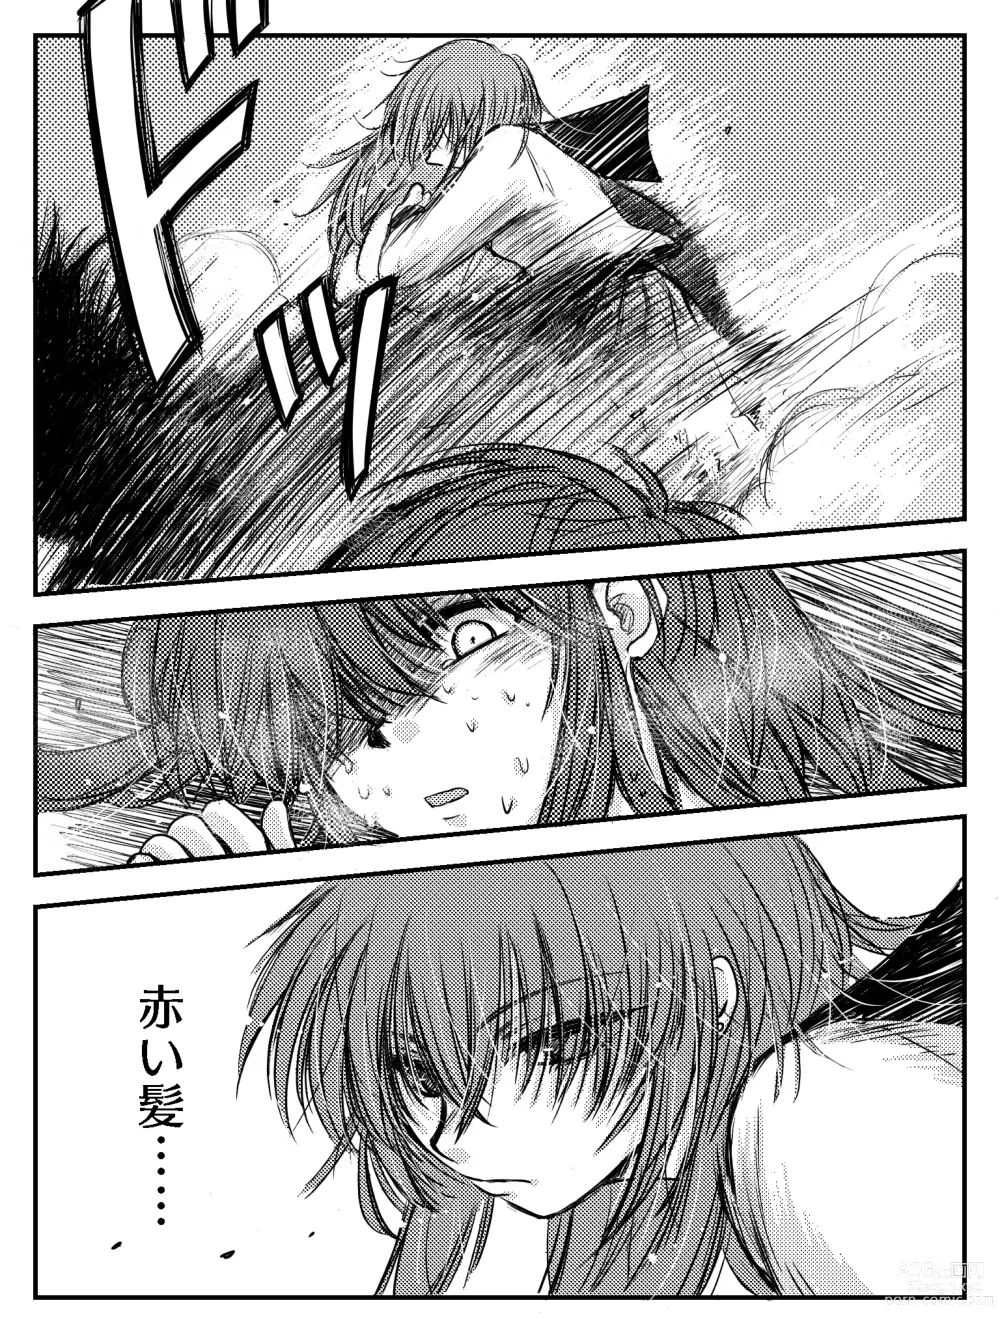 Page 77 of doujinshi LADIES NAVIGATION Episode 4